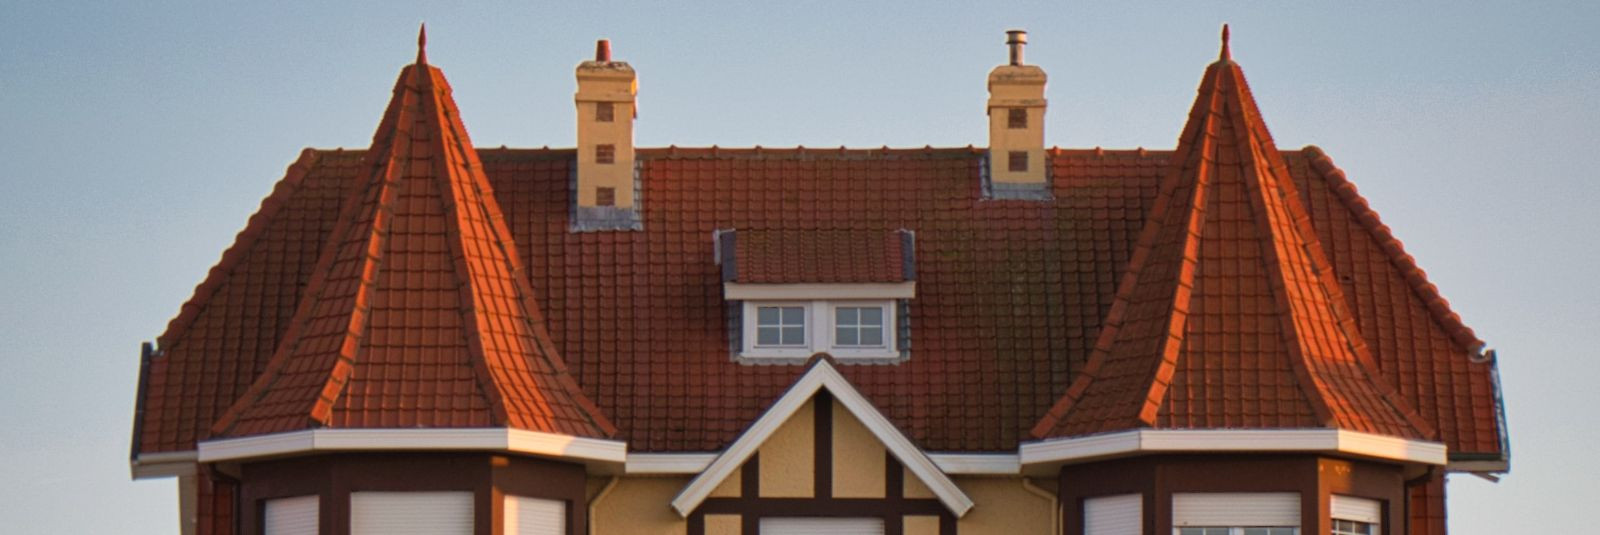 Kas olete mõelnud oma kodu või ärihoone katuse seisukorra parandamisele või soovite hoopis uut katust? Taitokatto OÜ on Eestis teie usaldusväärne partner kvalit